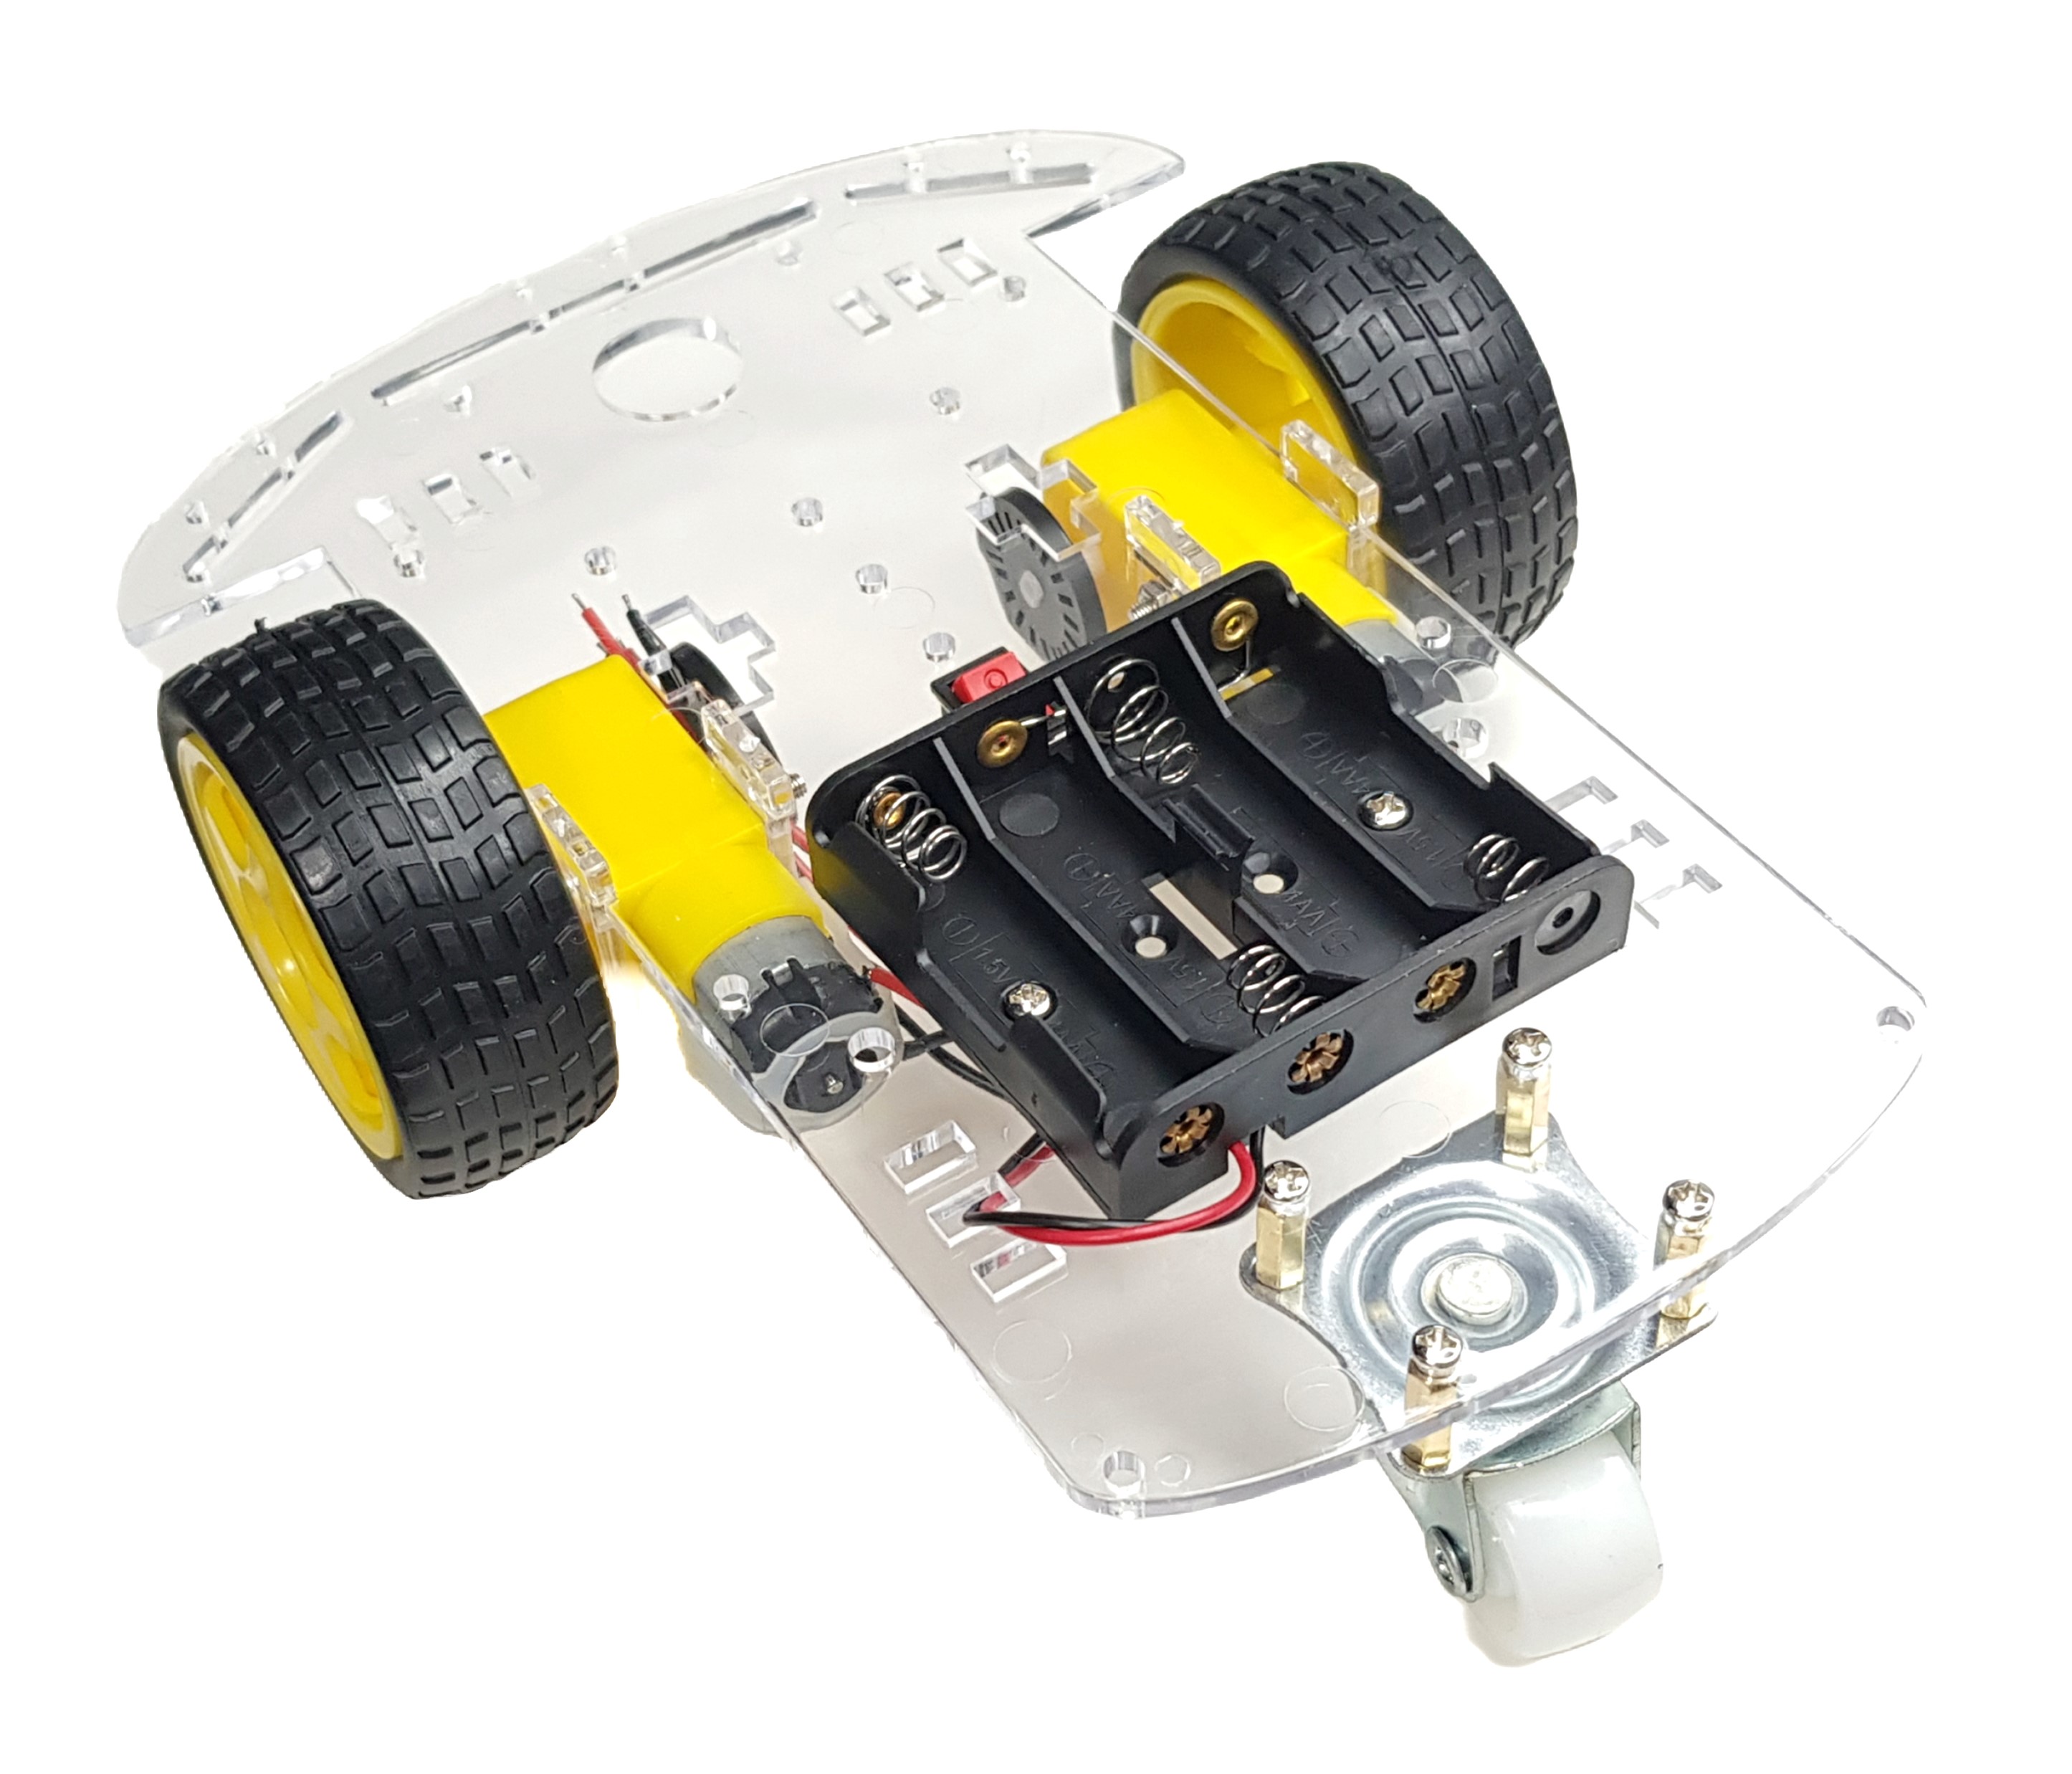 Hobby Motor and Encoder Kit